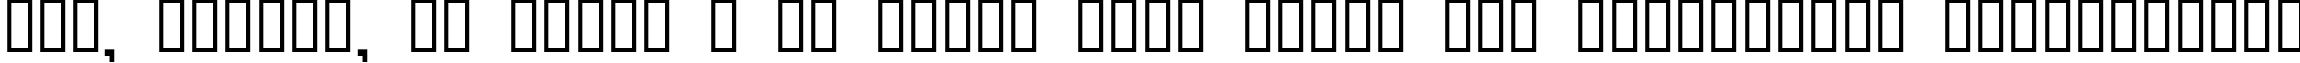 Пример написания шрифтом QuickGear текста на украинском